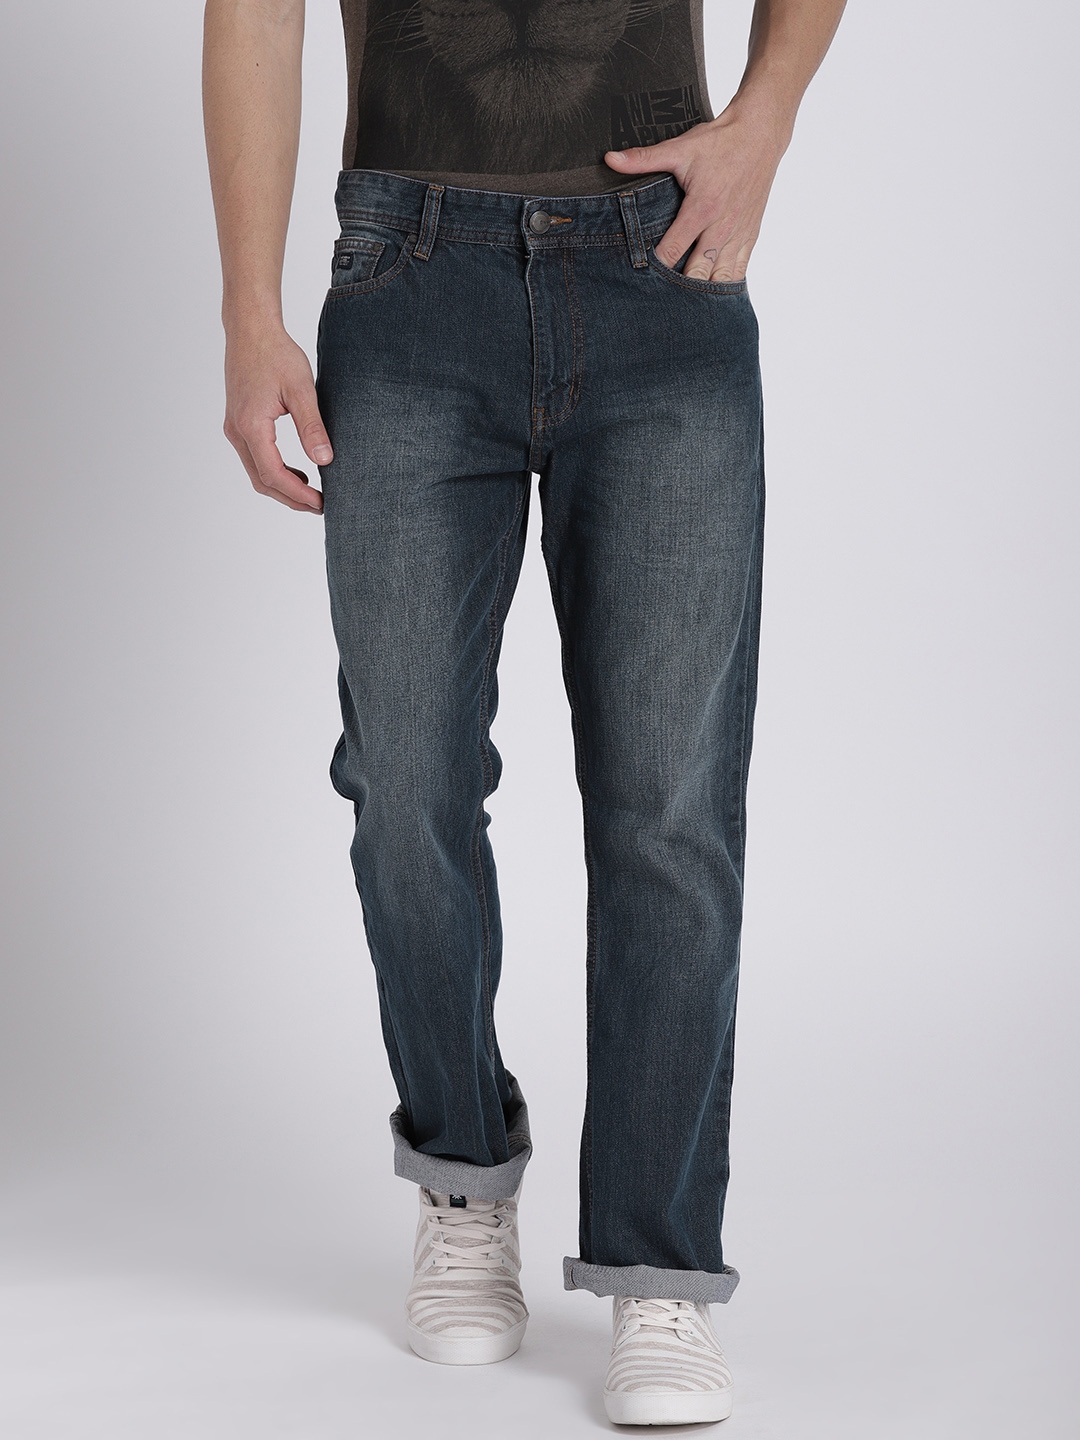 Buy Splash Men Blue Bootcut Mid Rise Clean Look Jeans - Jeans for Men ...